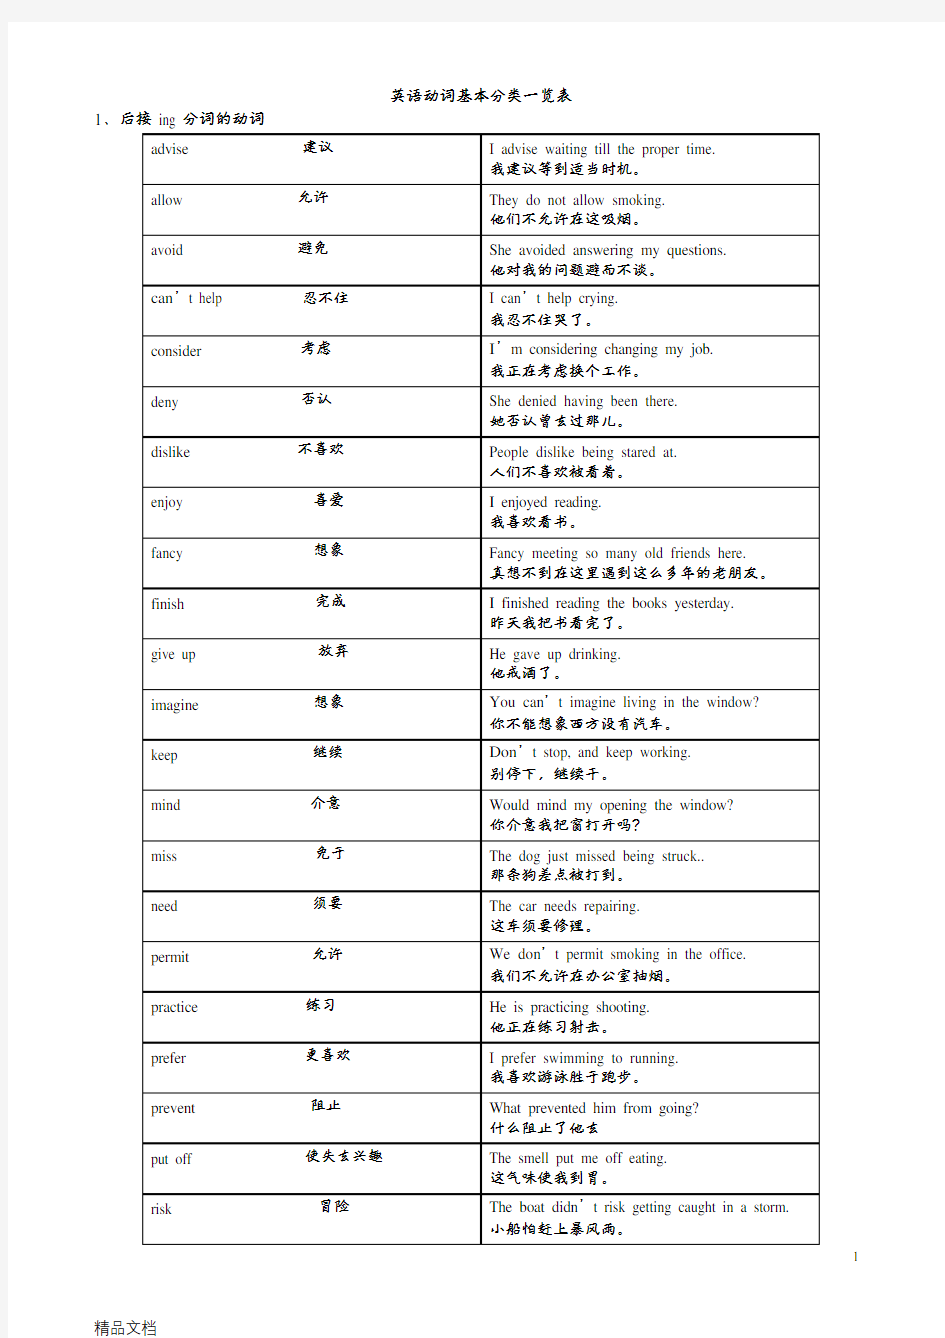 英语动词基本分类一览表讲解学习